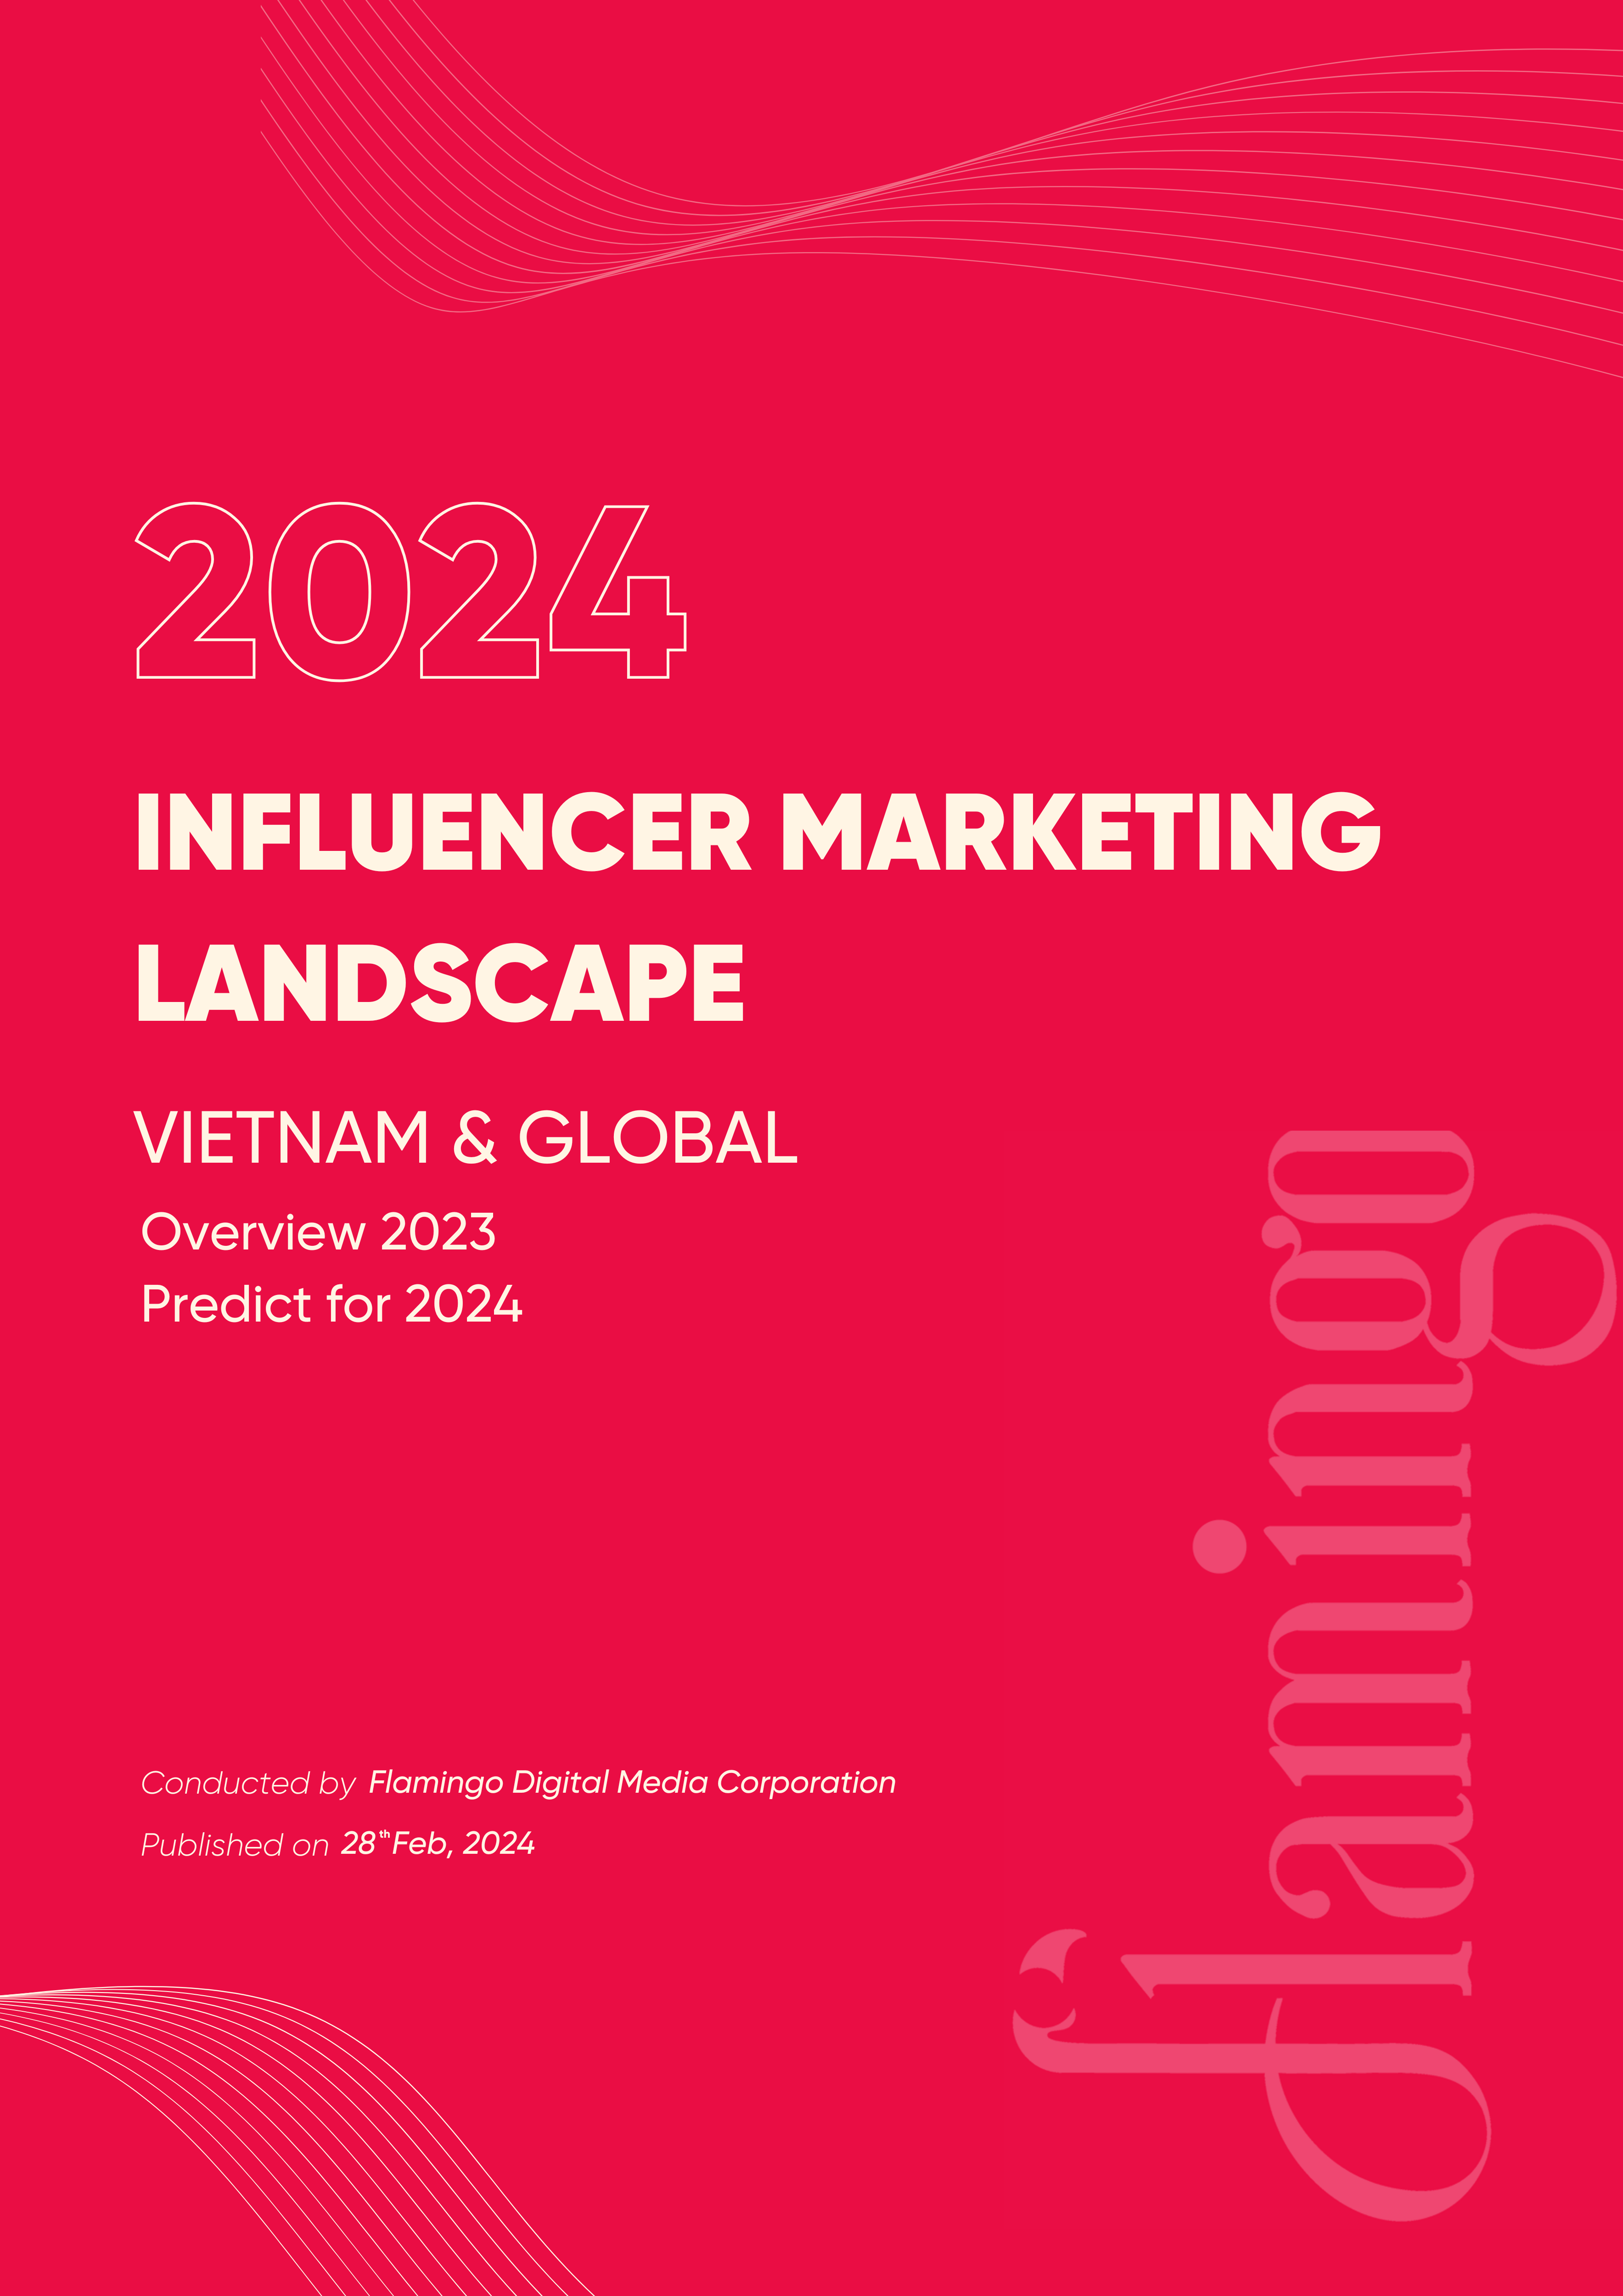 Global and Vietnam Influencer Marketing Landscape 2024